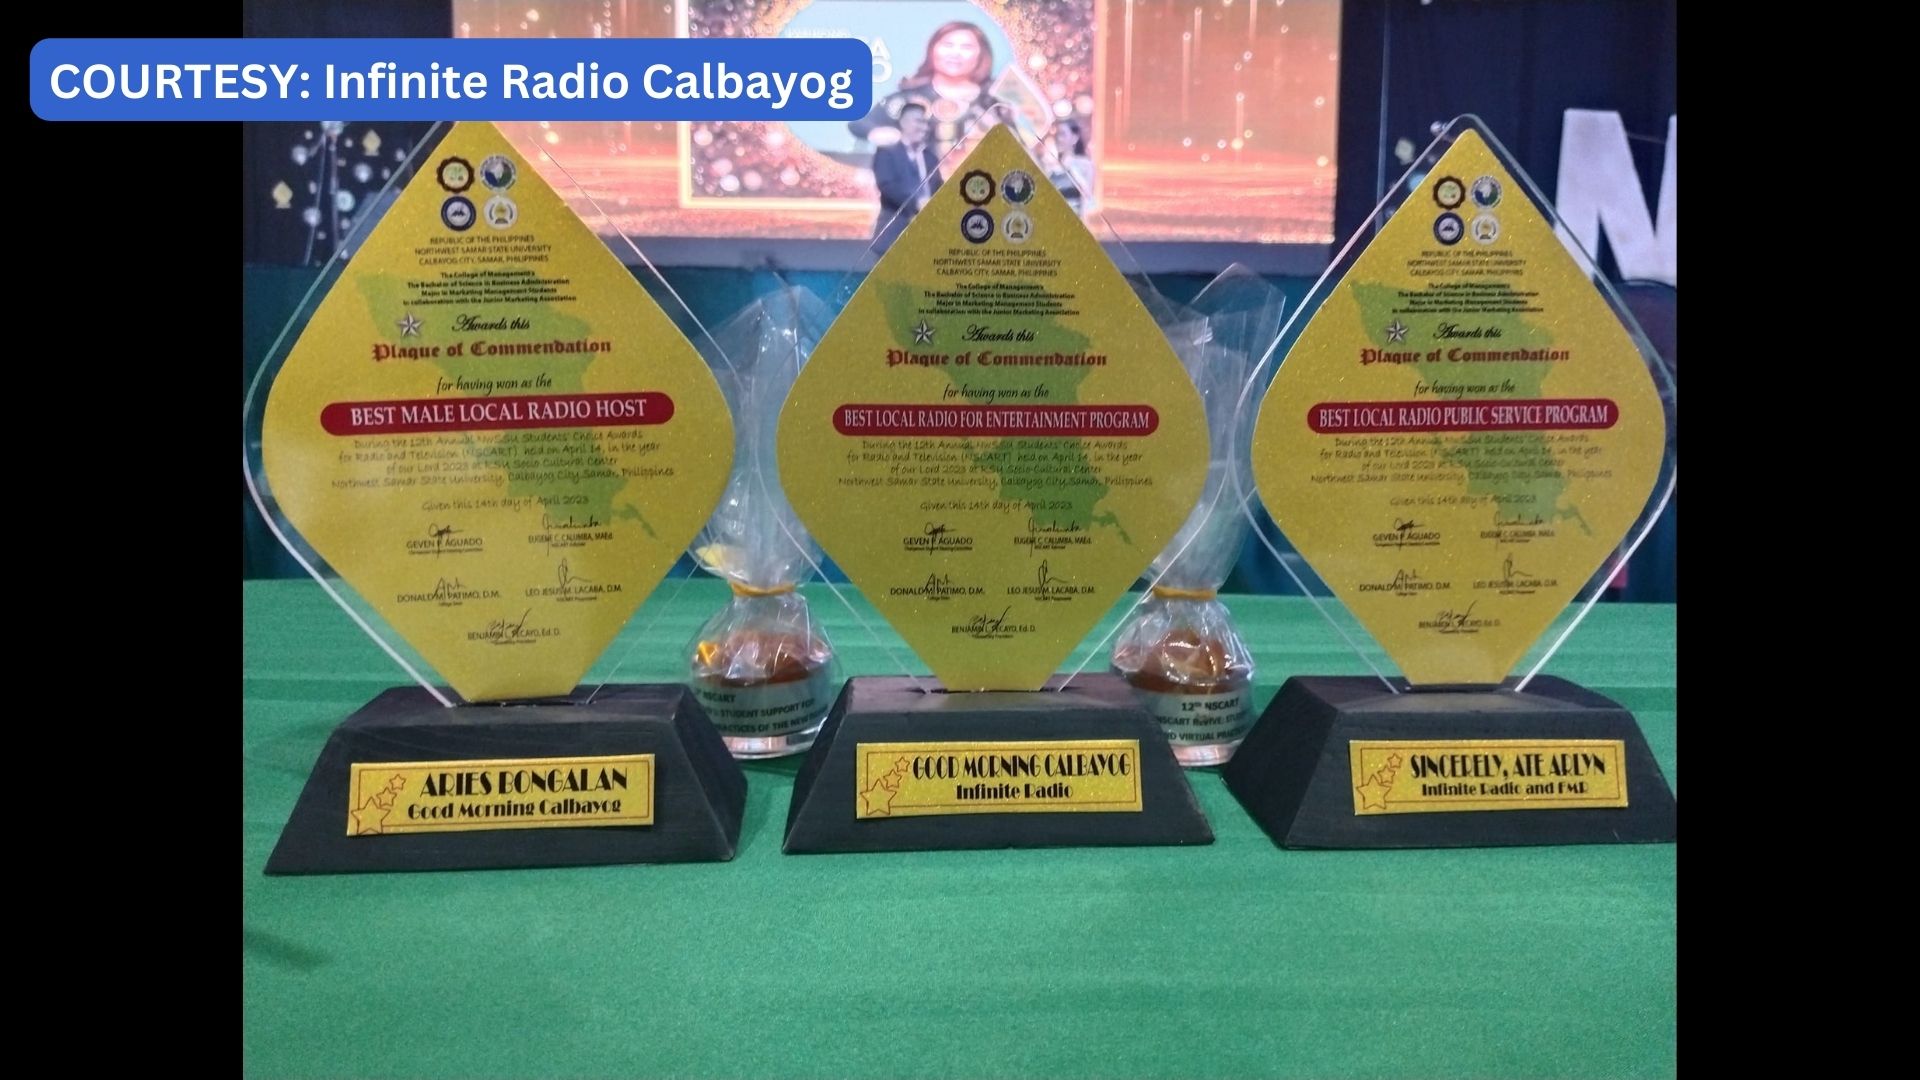 Infinite Radio Calbayog humakot ng parangal sa 12th Annual NWSSU Students’ Choice Awards